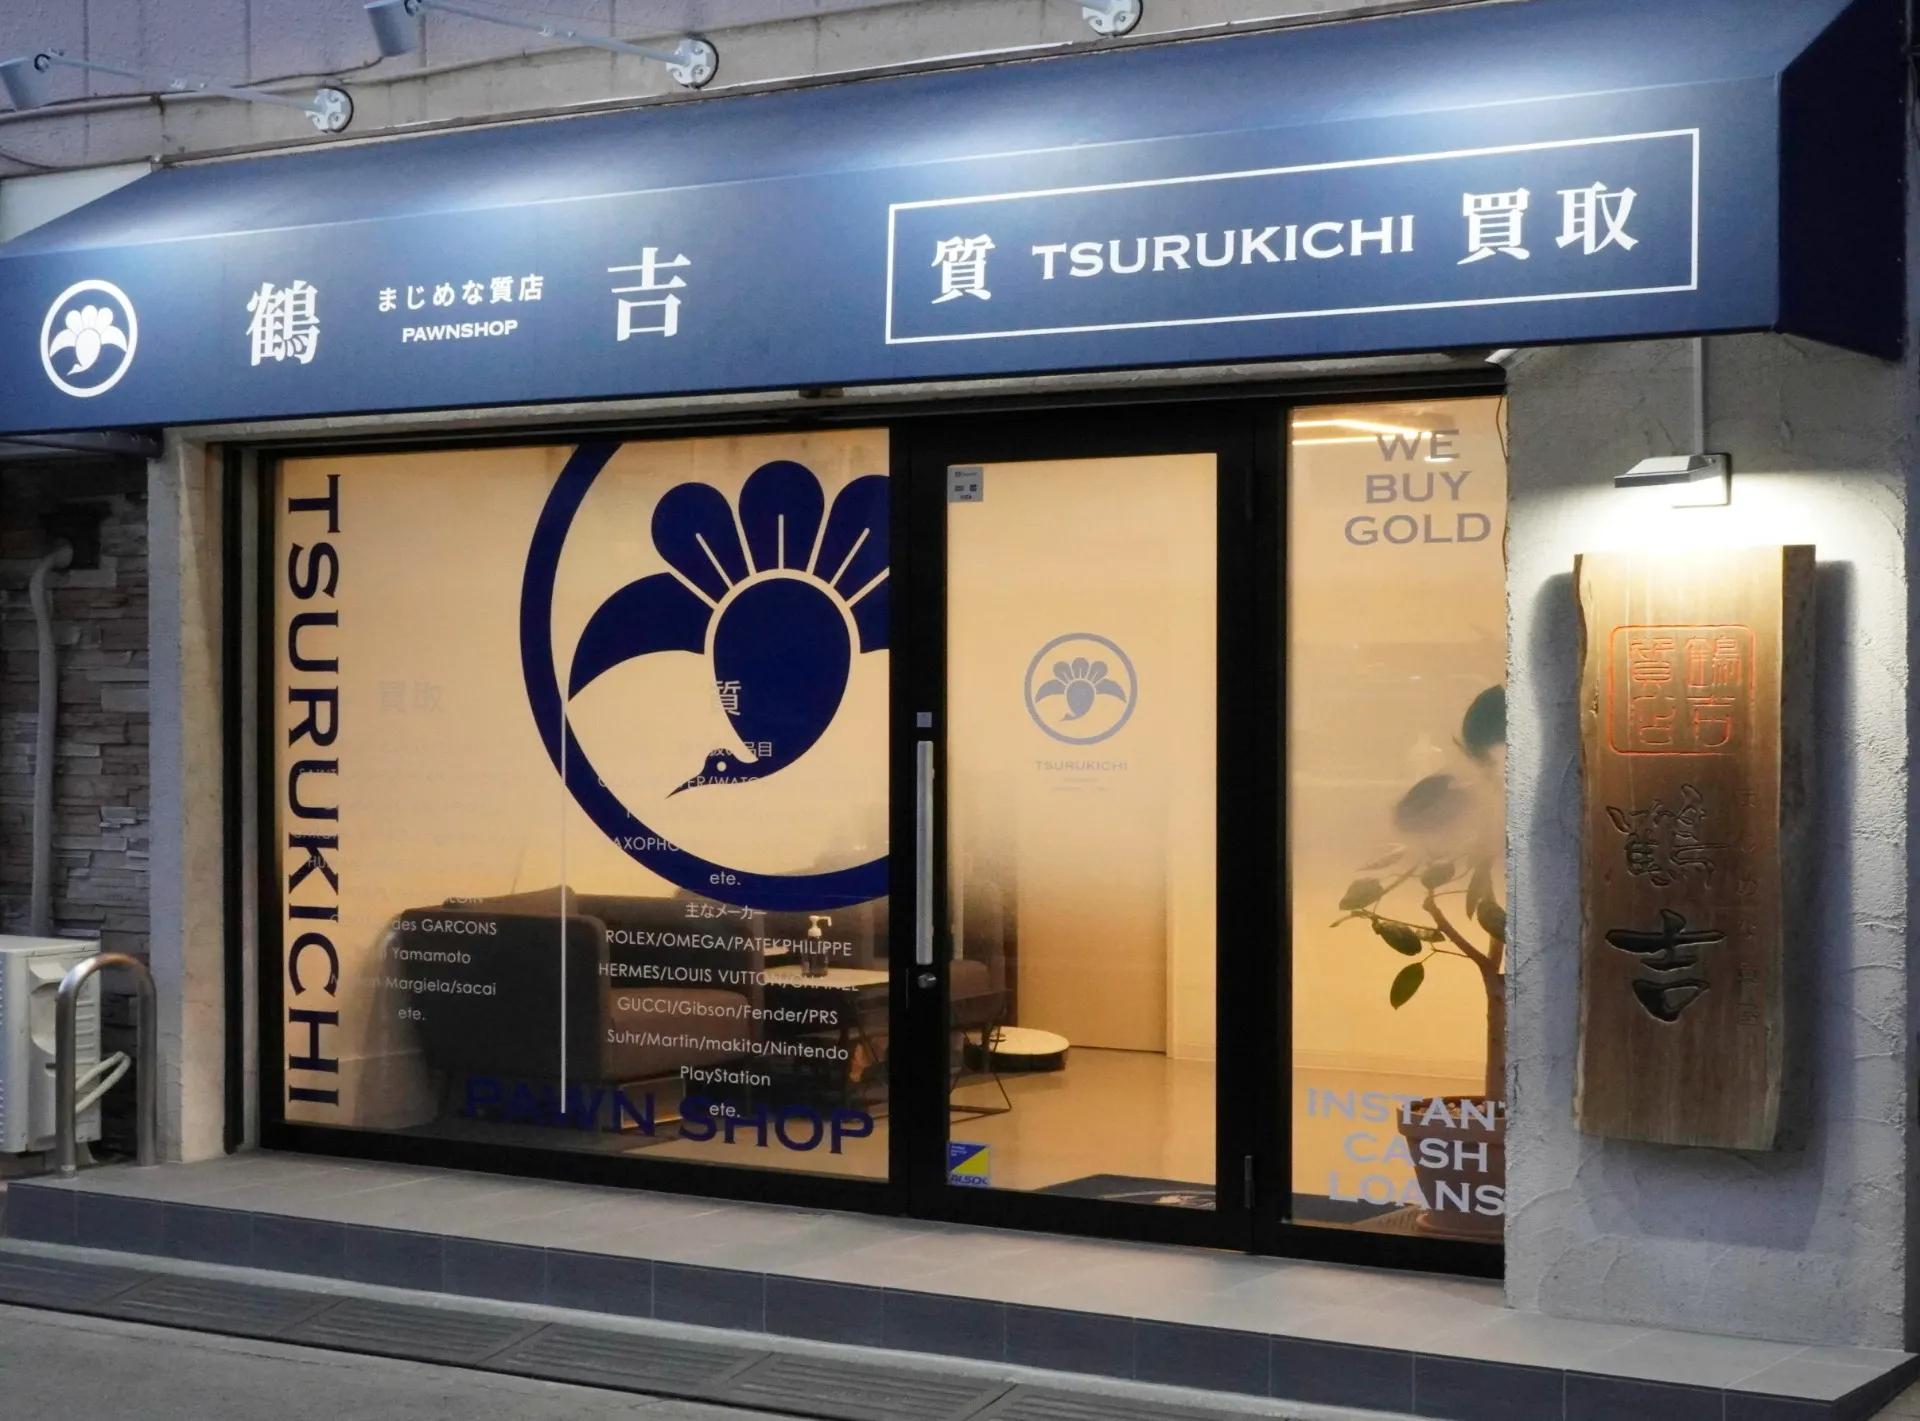 川崎で高価格の買取と評判の鶴吉質店は信頼と実績のある質屋です